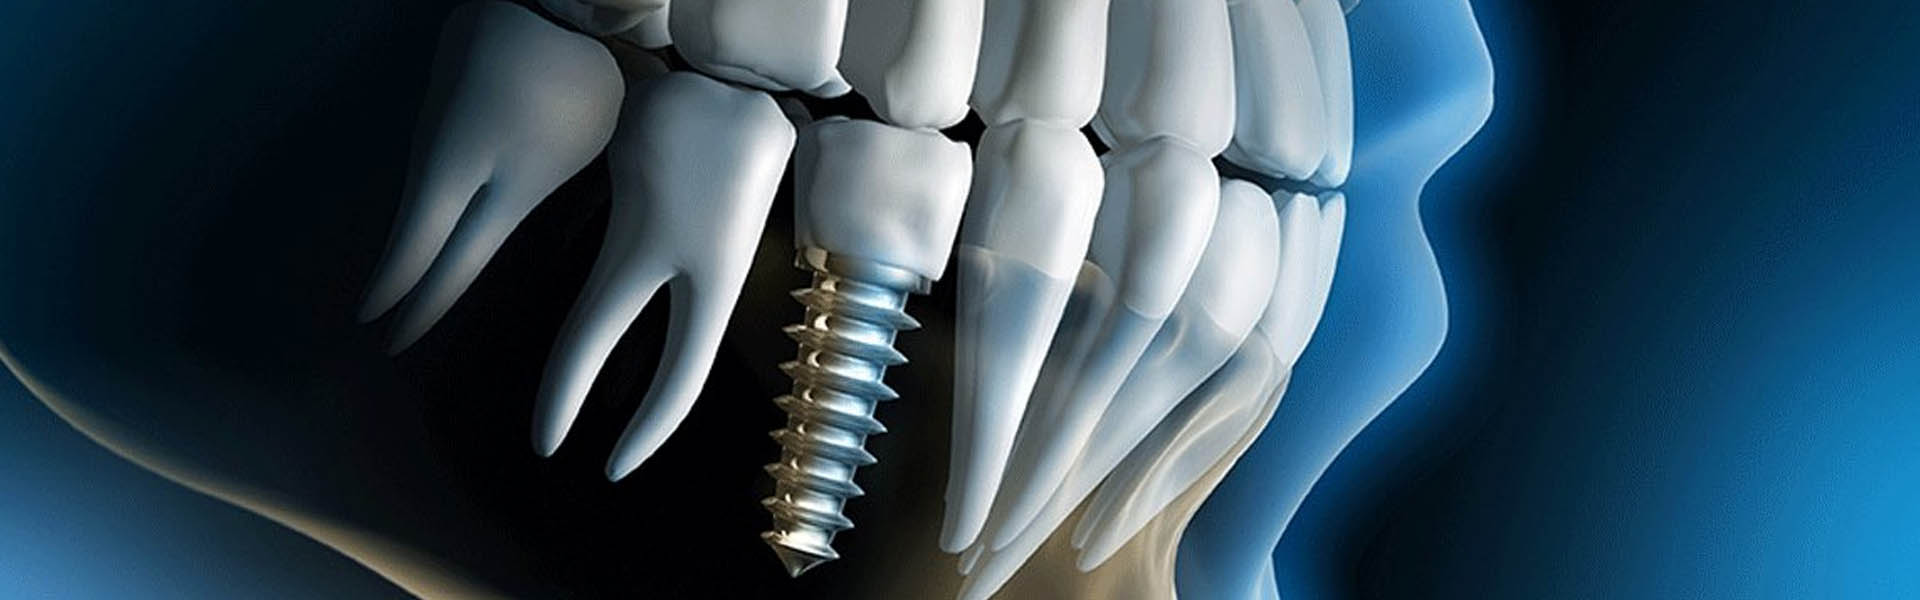 dentalimplants.jpg